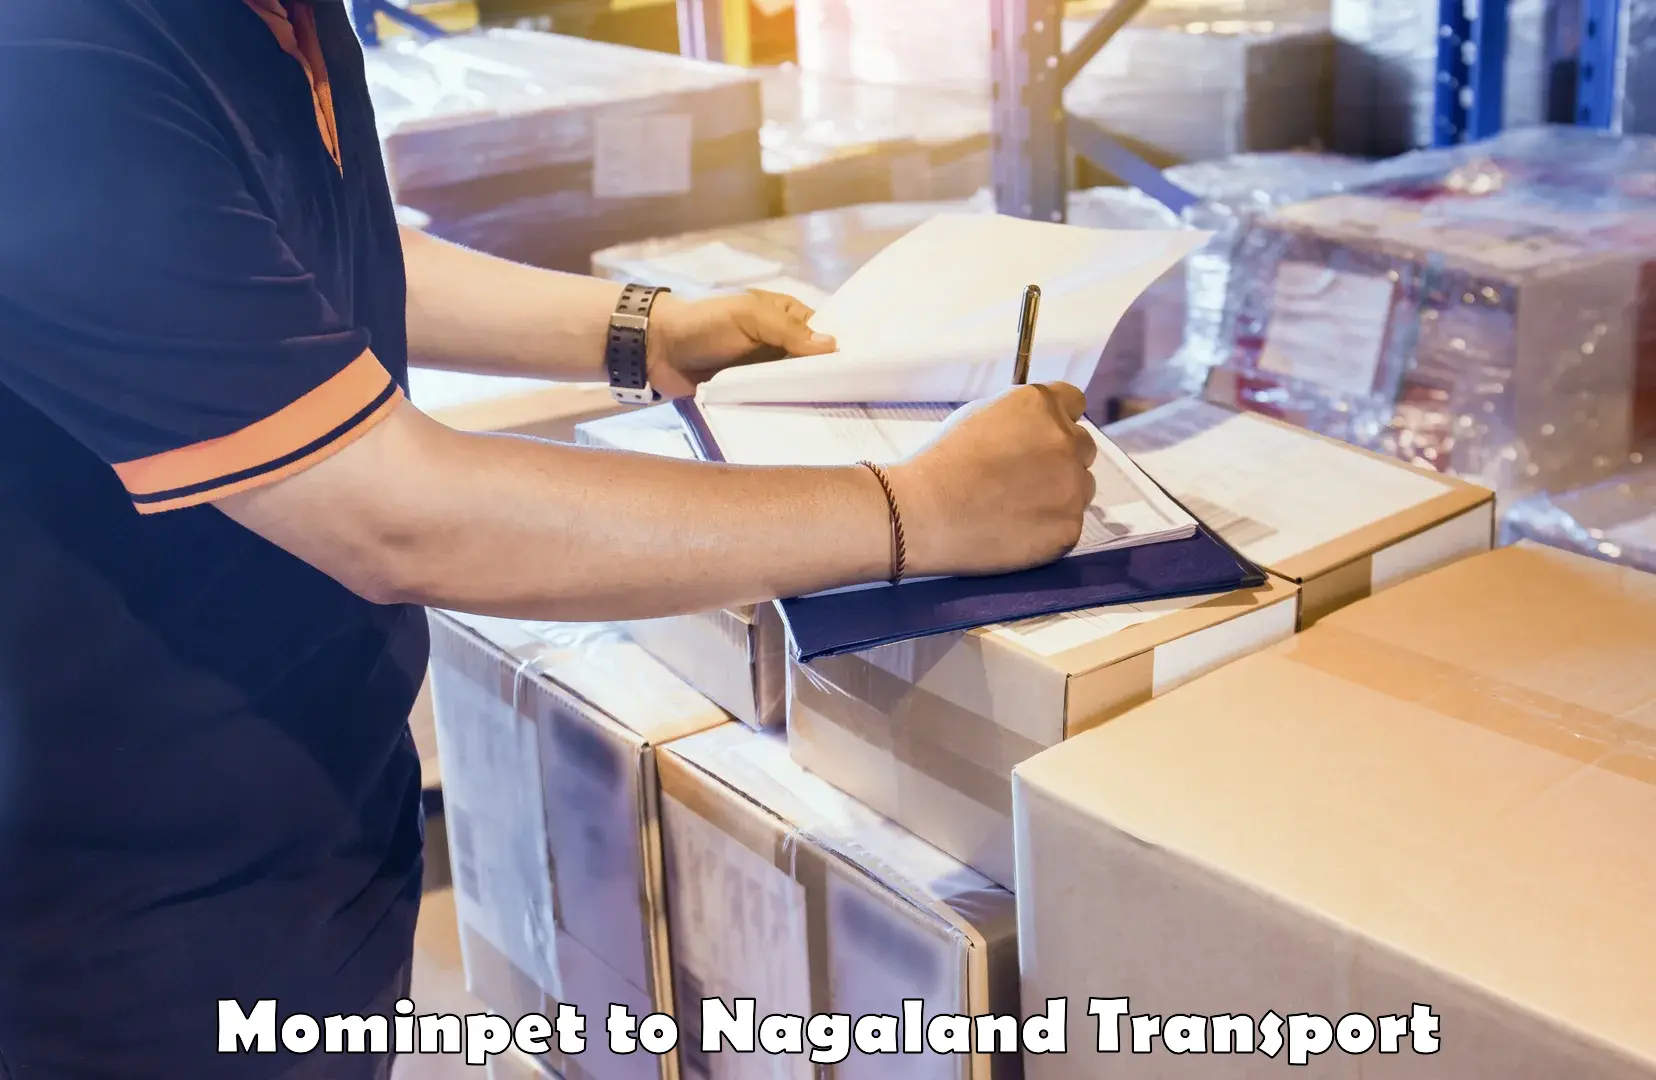 Nearest transport service Mominpet to NIT Nagaland